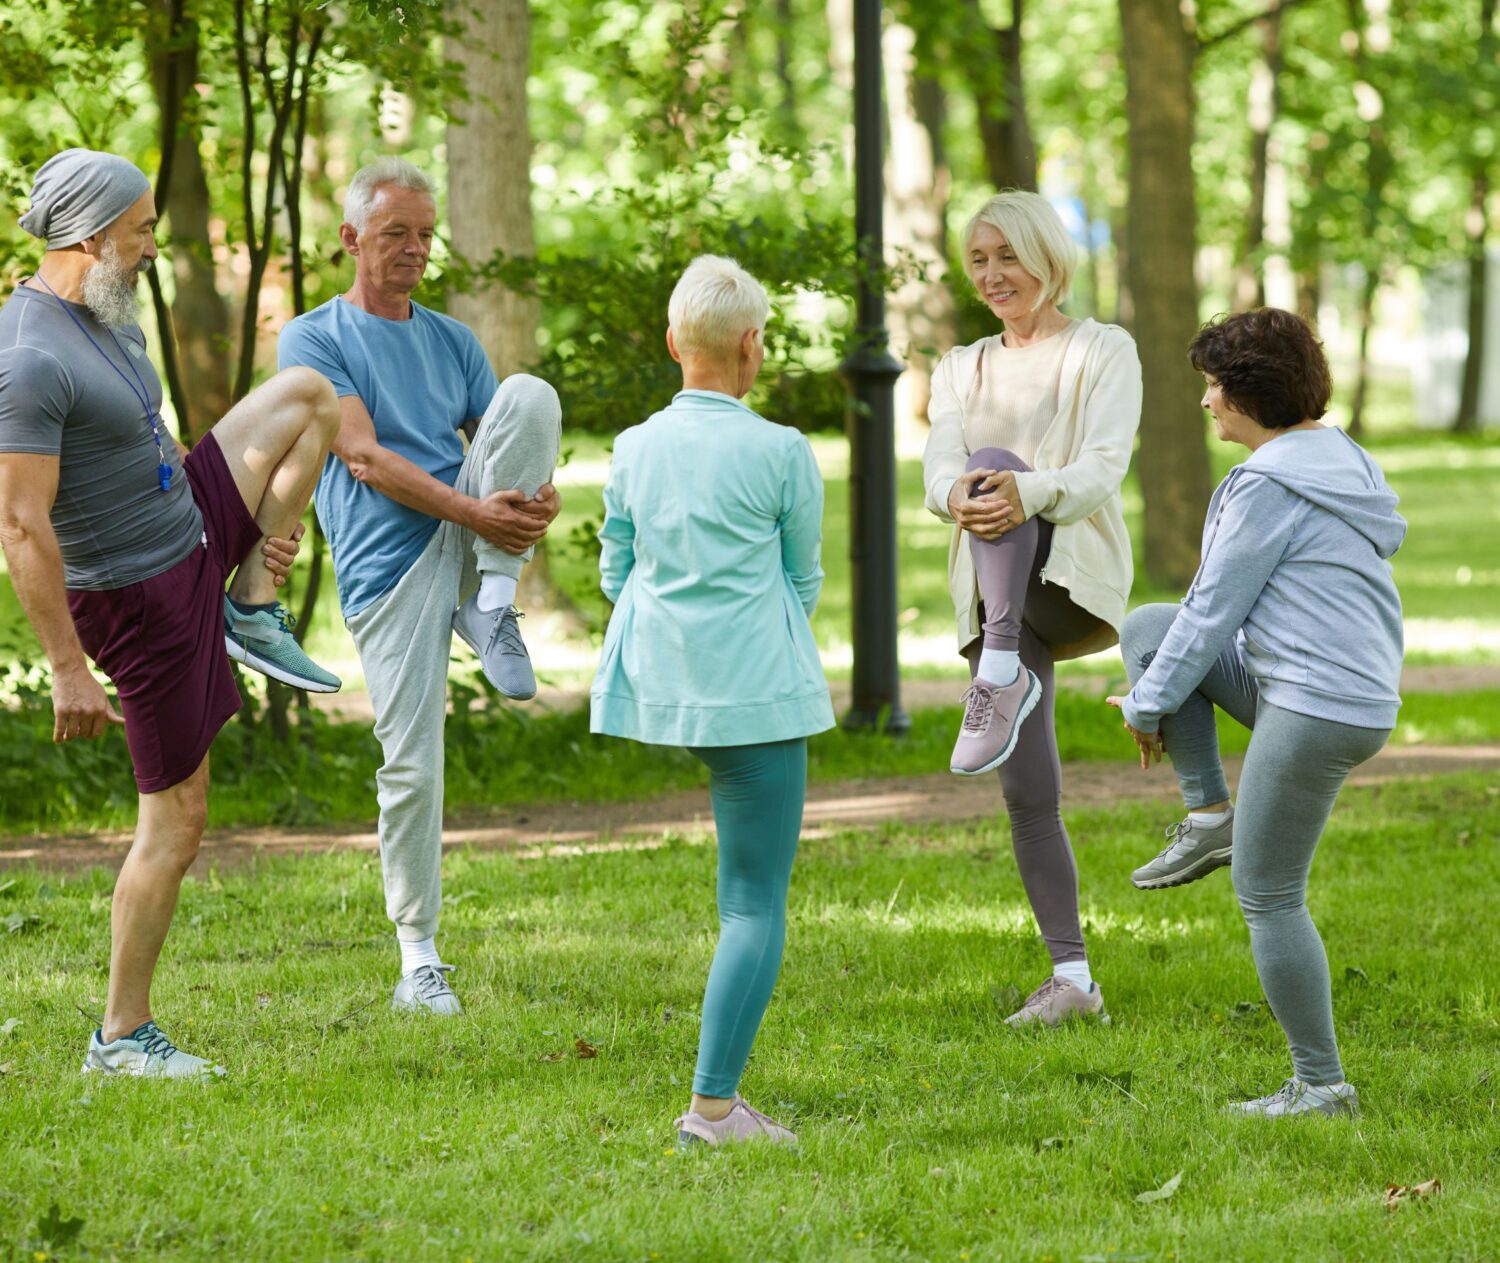 3-Balance-Exercises-for-Seniors-to-Prevent-Falls-Inside-Image-1